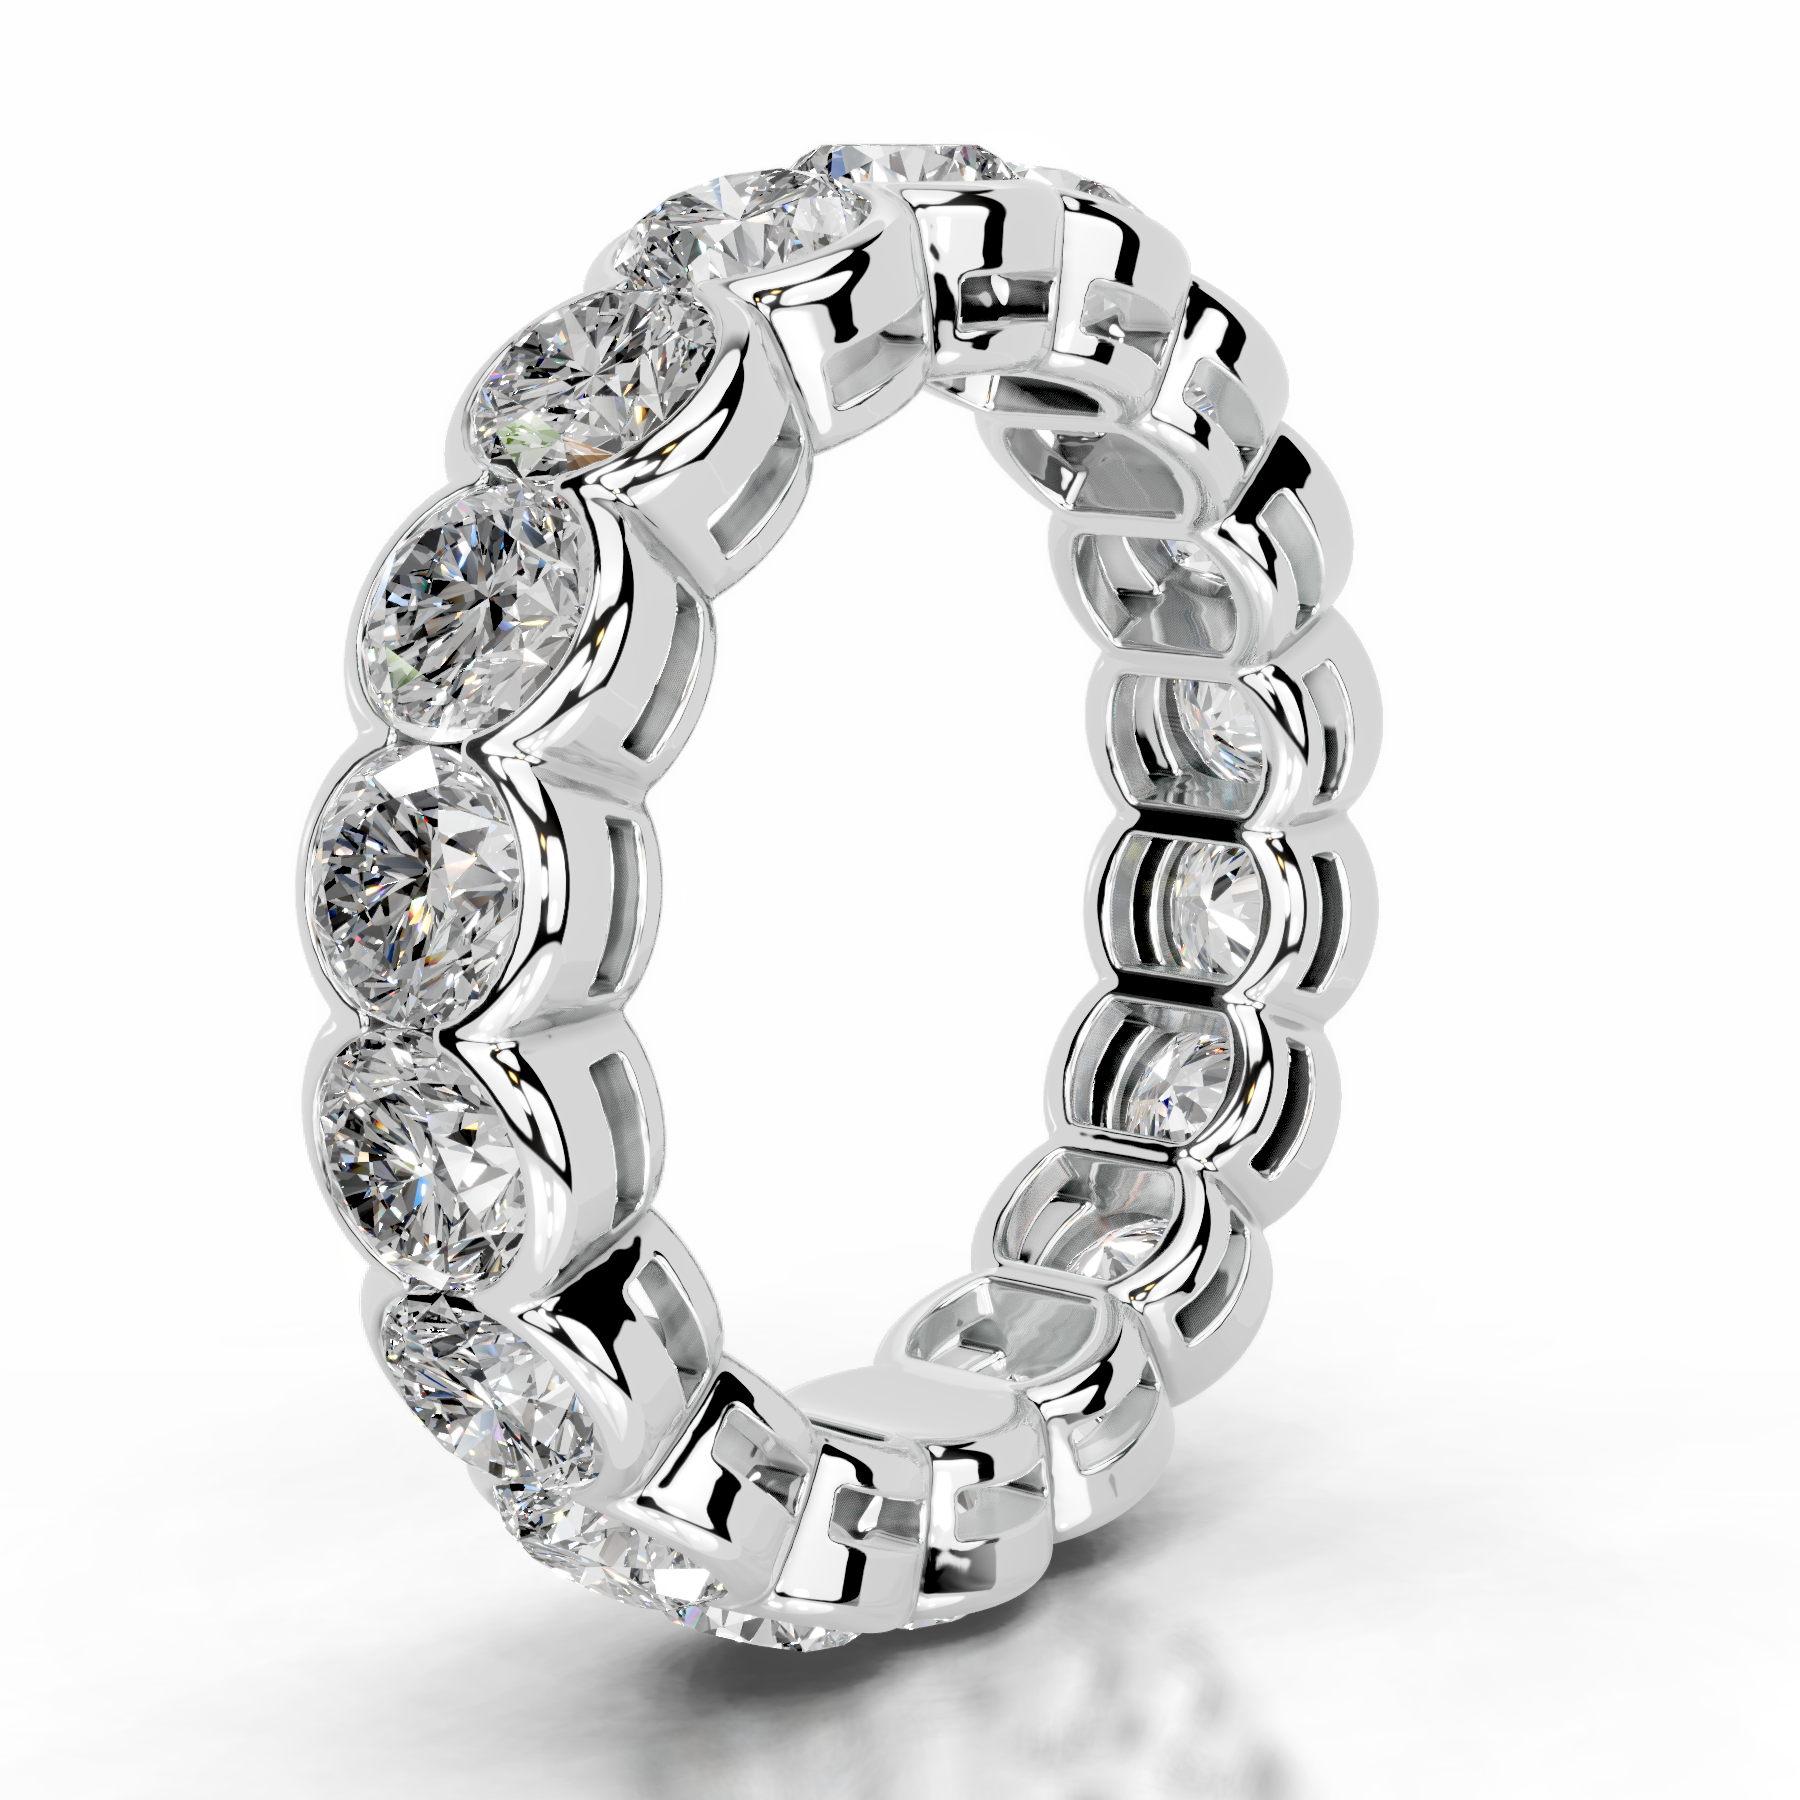 Velinda Diamond Wedding Ring   (4 Carat) -18K White Gold